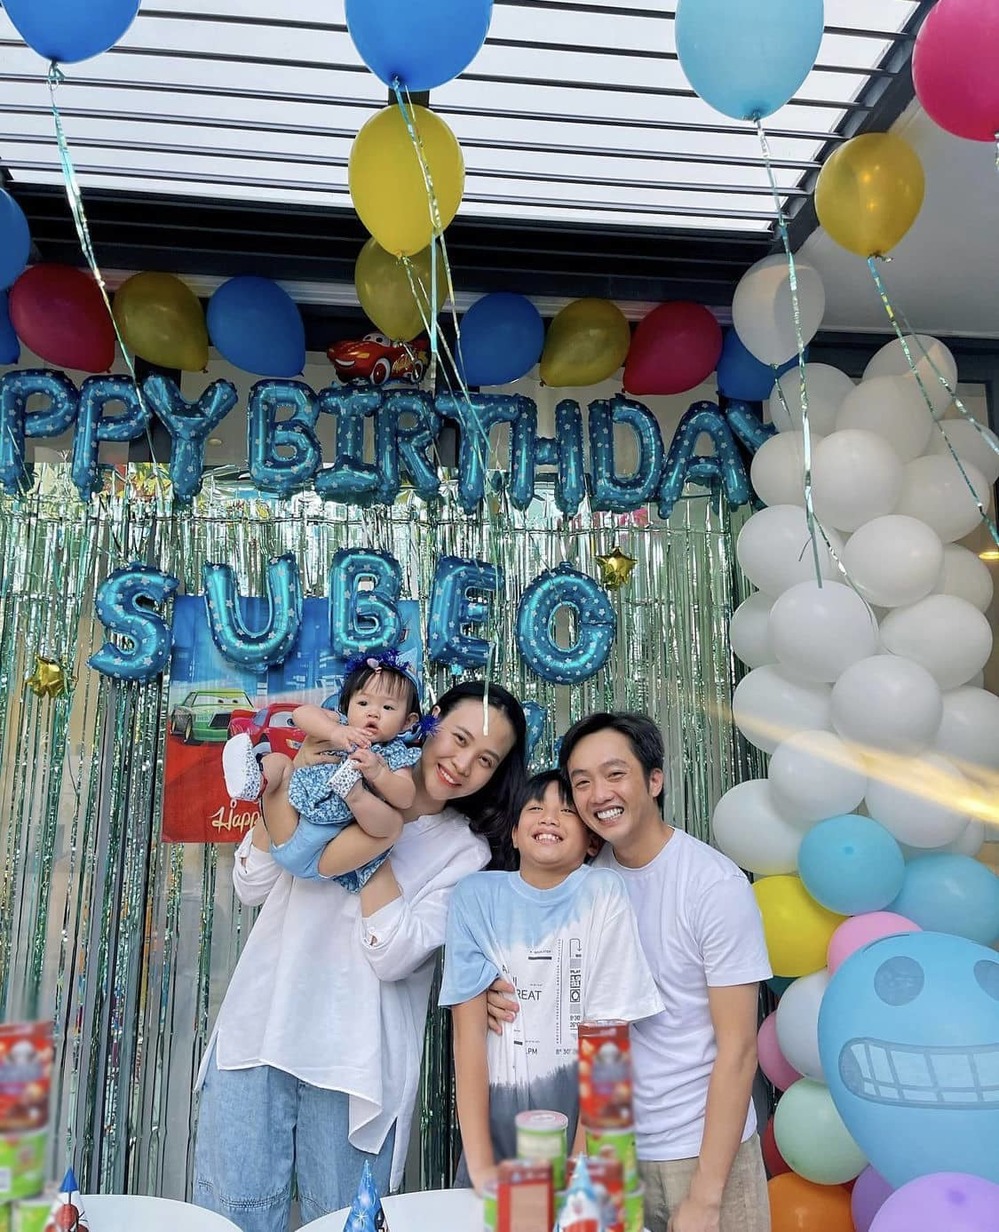  
Cách đây không lâu, cả gia đình cùng nhau đón sinh nhật Subeo. (Ảnh: IGNV) - Tin sao Viet - Tin tuc sao Viet - Scandal sao Viet - Tin tuc cua Sao - Tin cua Sao